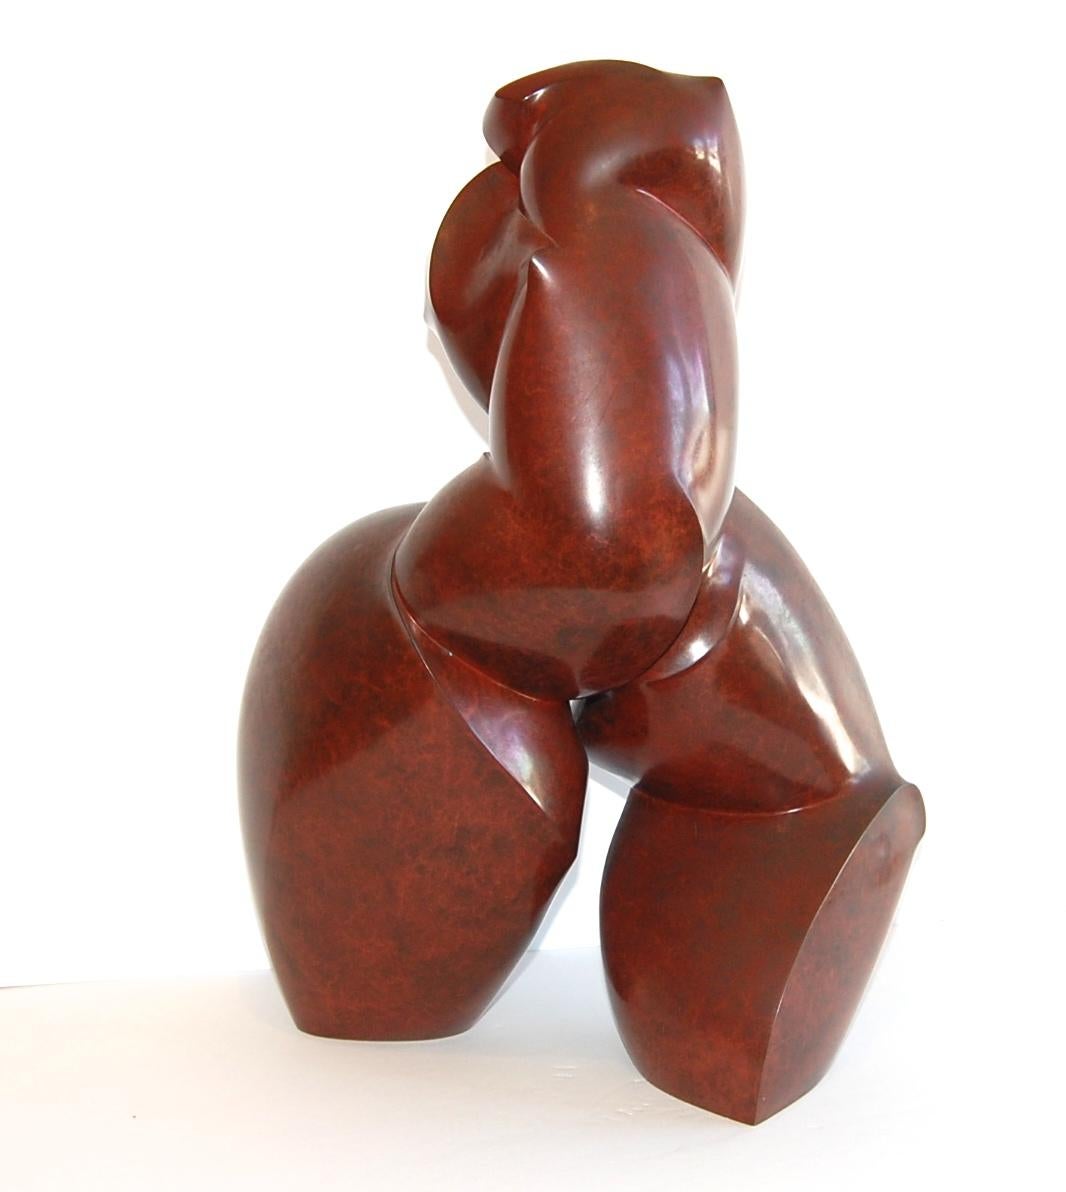 Nude Sculpture Dominique Polles  - Dominique Polies Sculpture nue en bronze